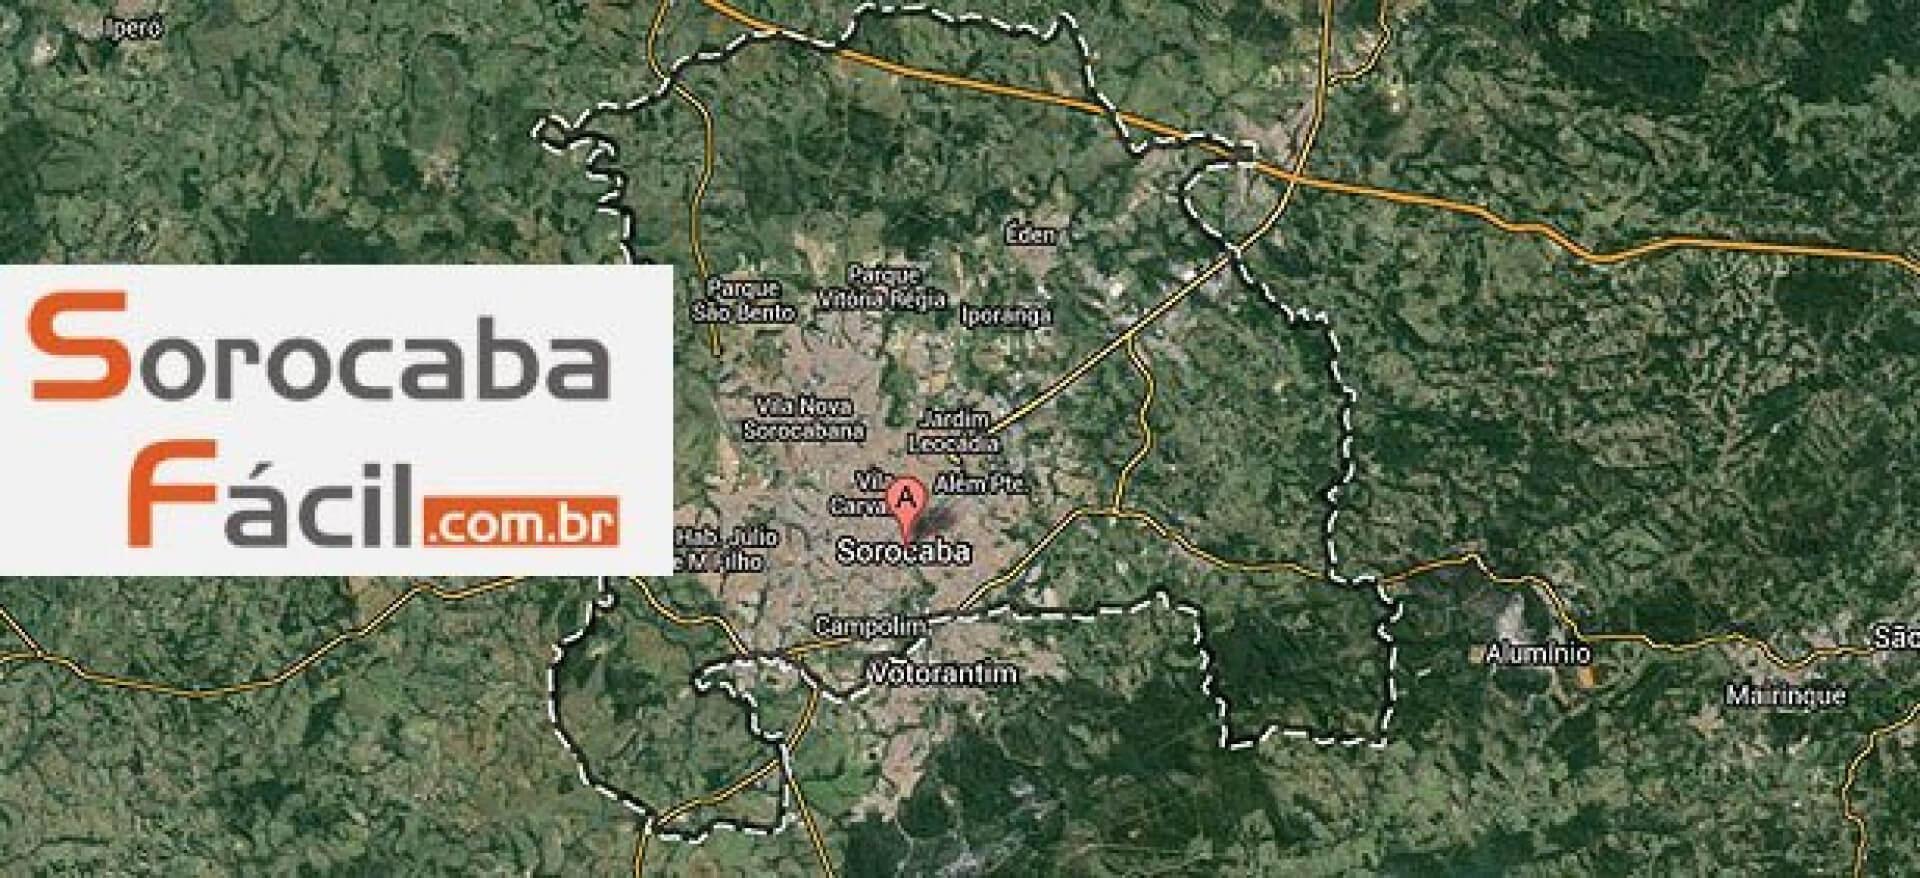 imagem de mapa onde mostra a cidade de sorocaba